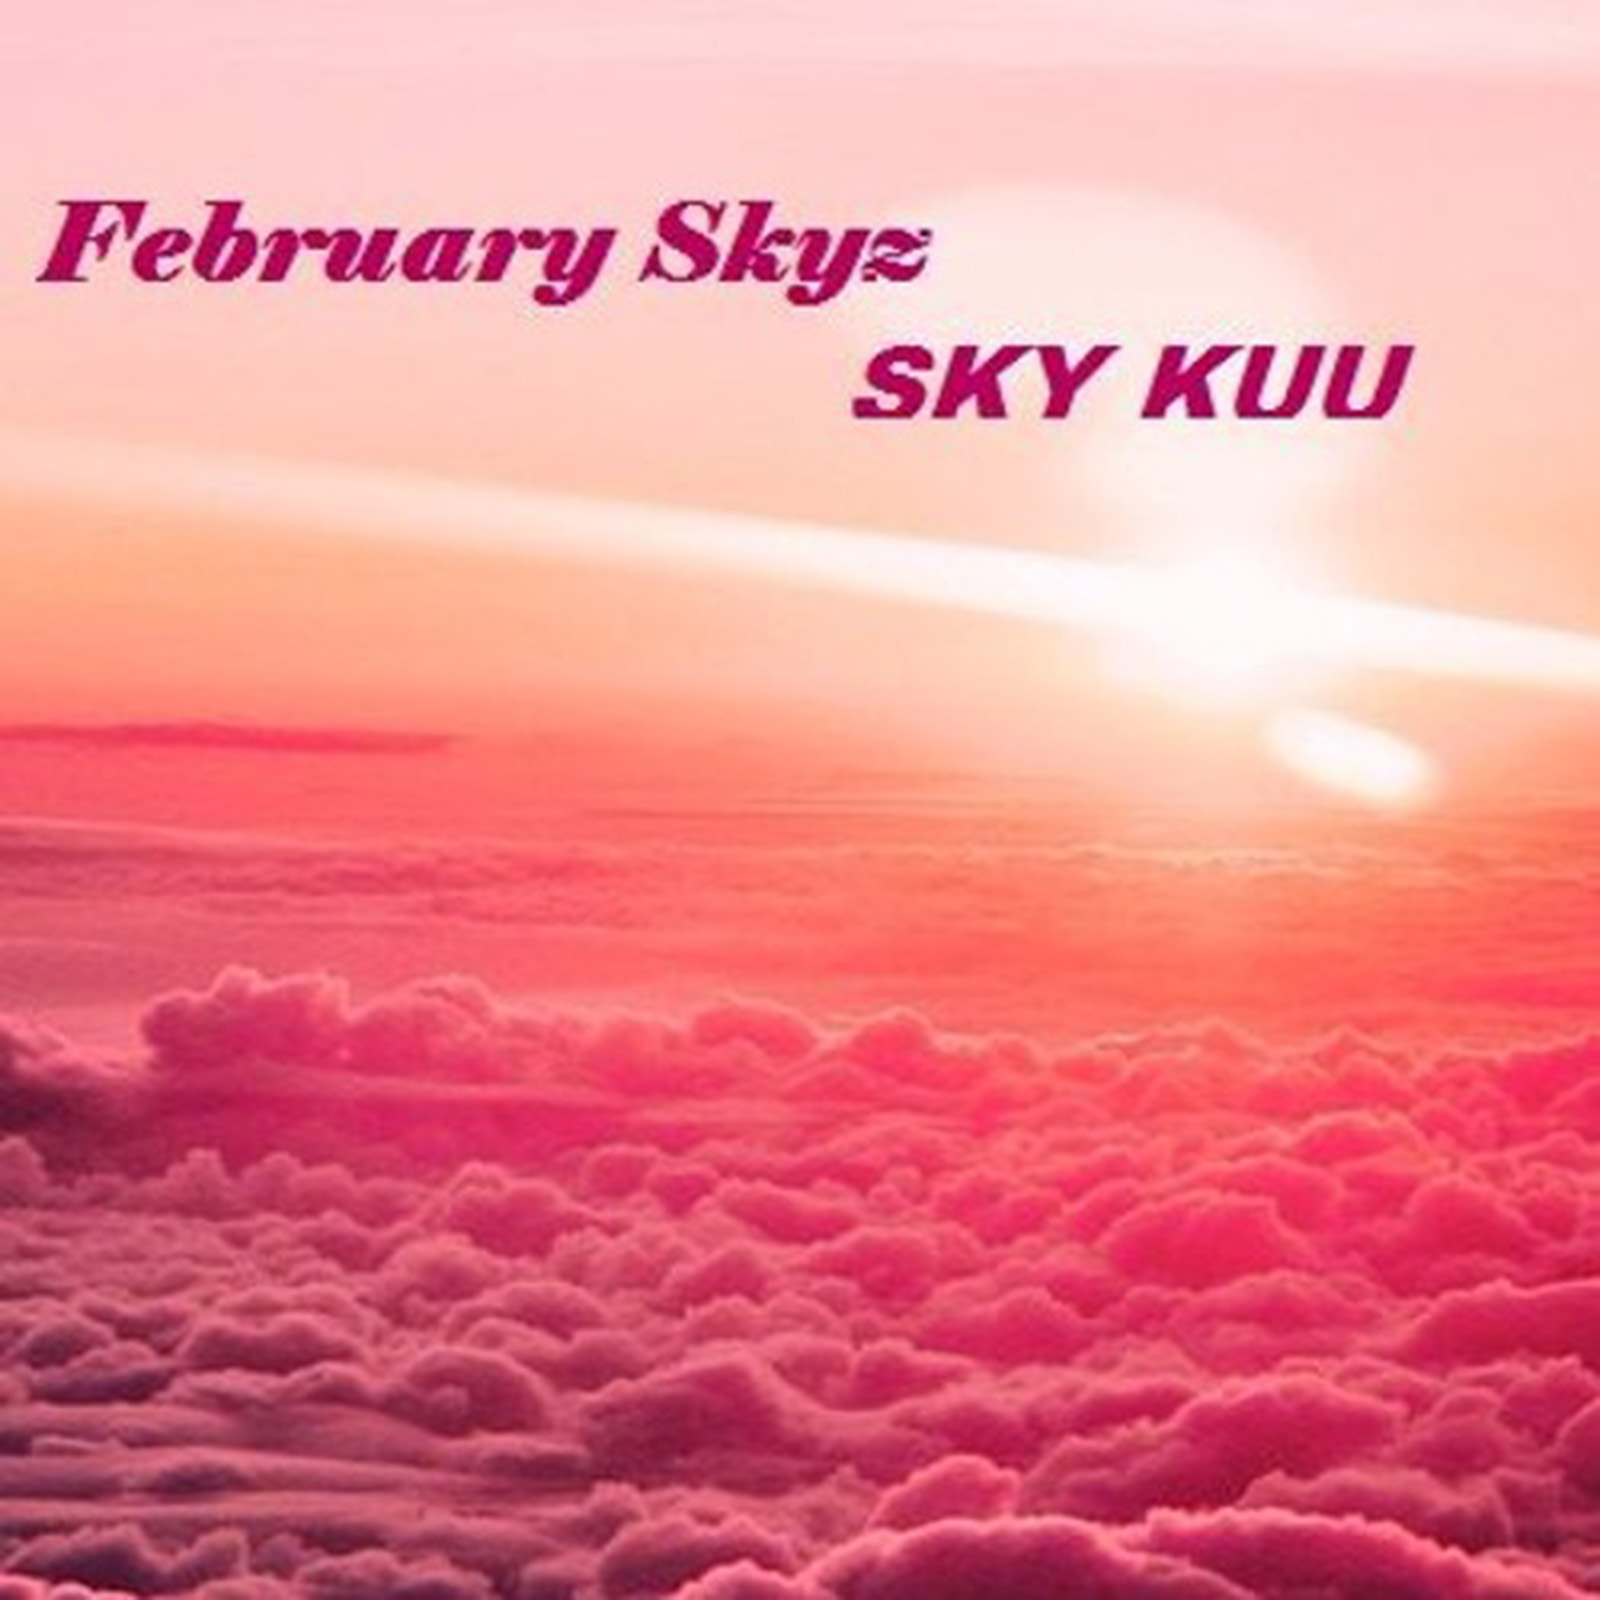 February Skyz by Sky Kuu